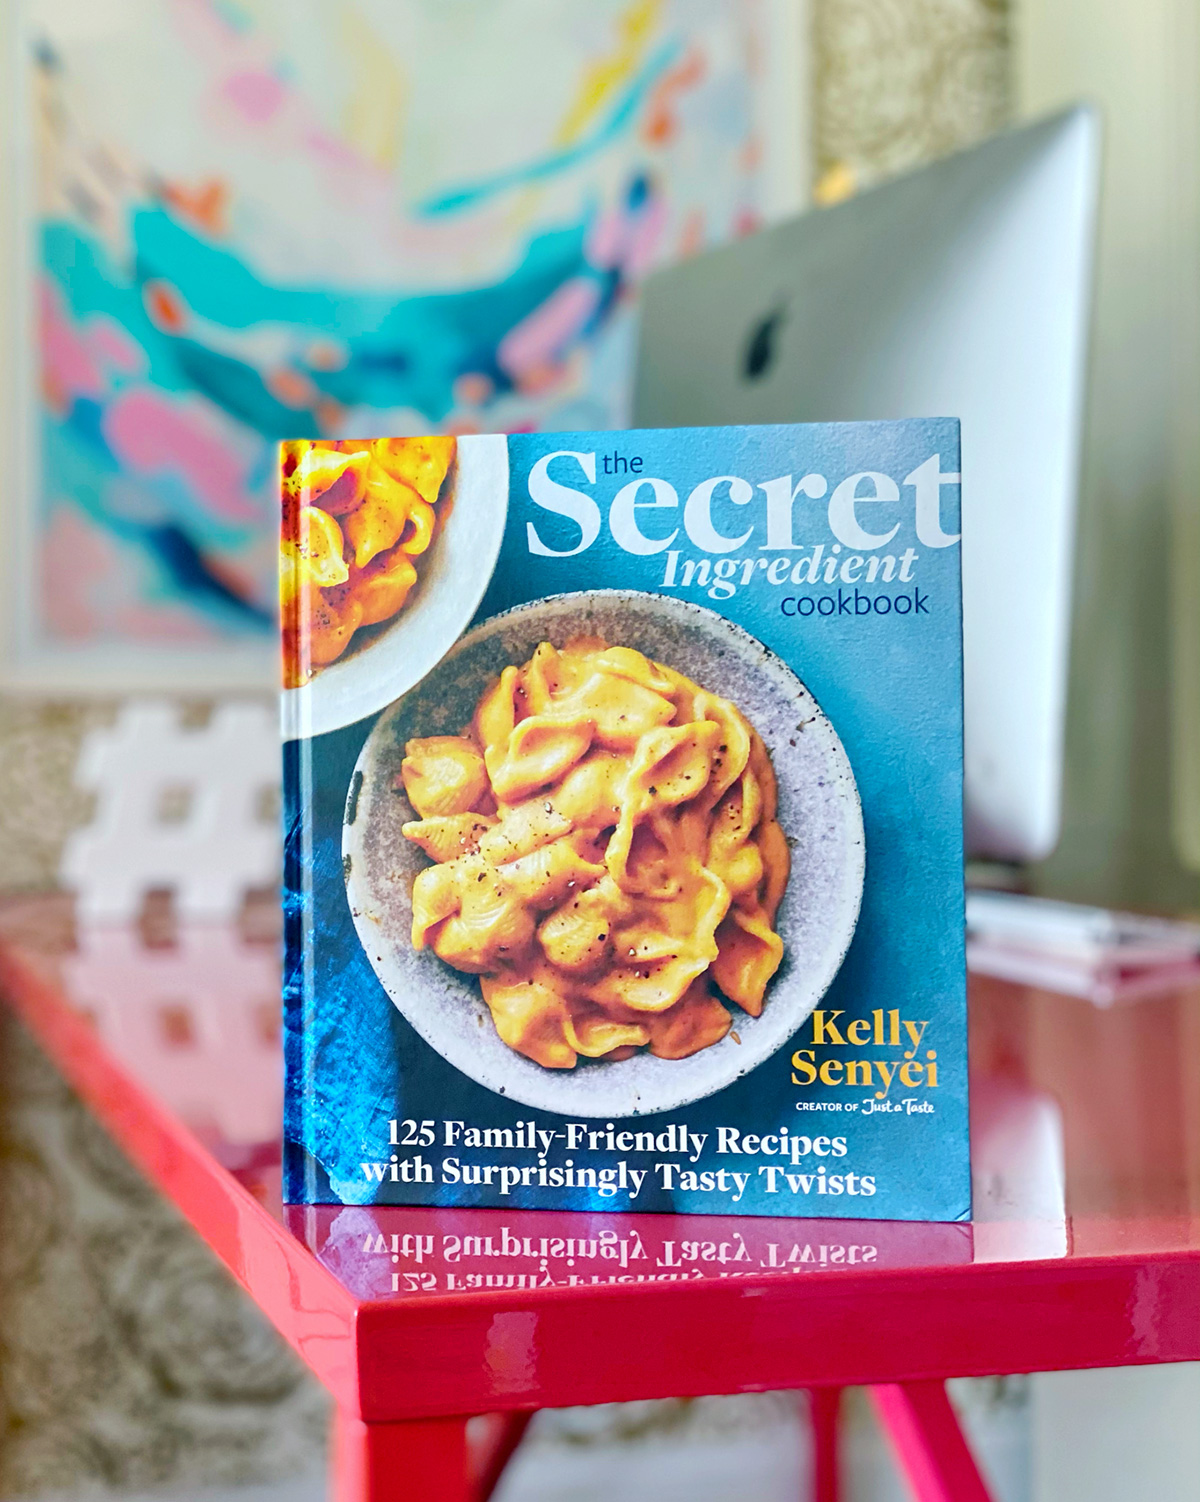 The Secret Ingredient Cookbook by Kelly Senyei